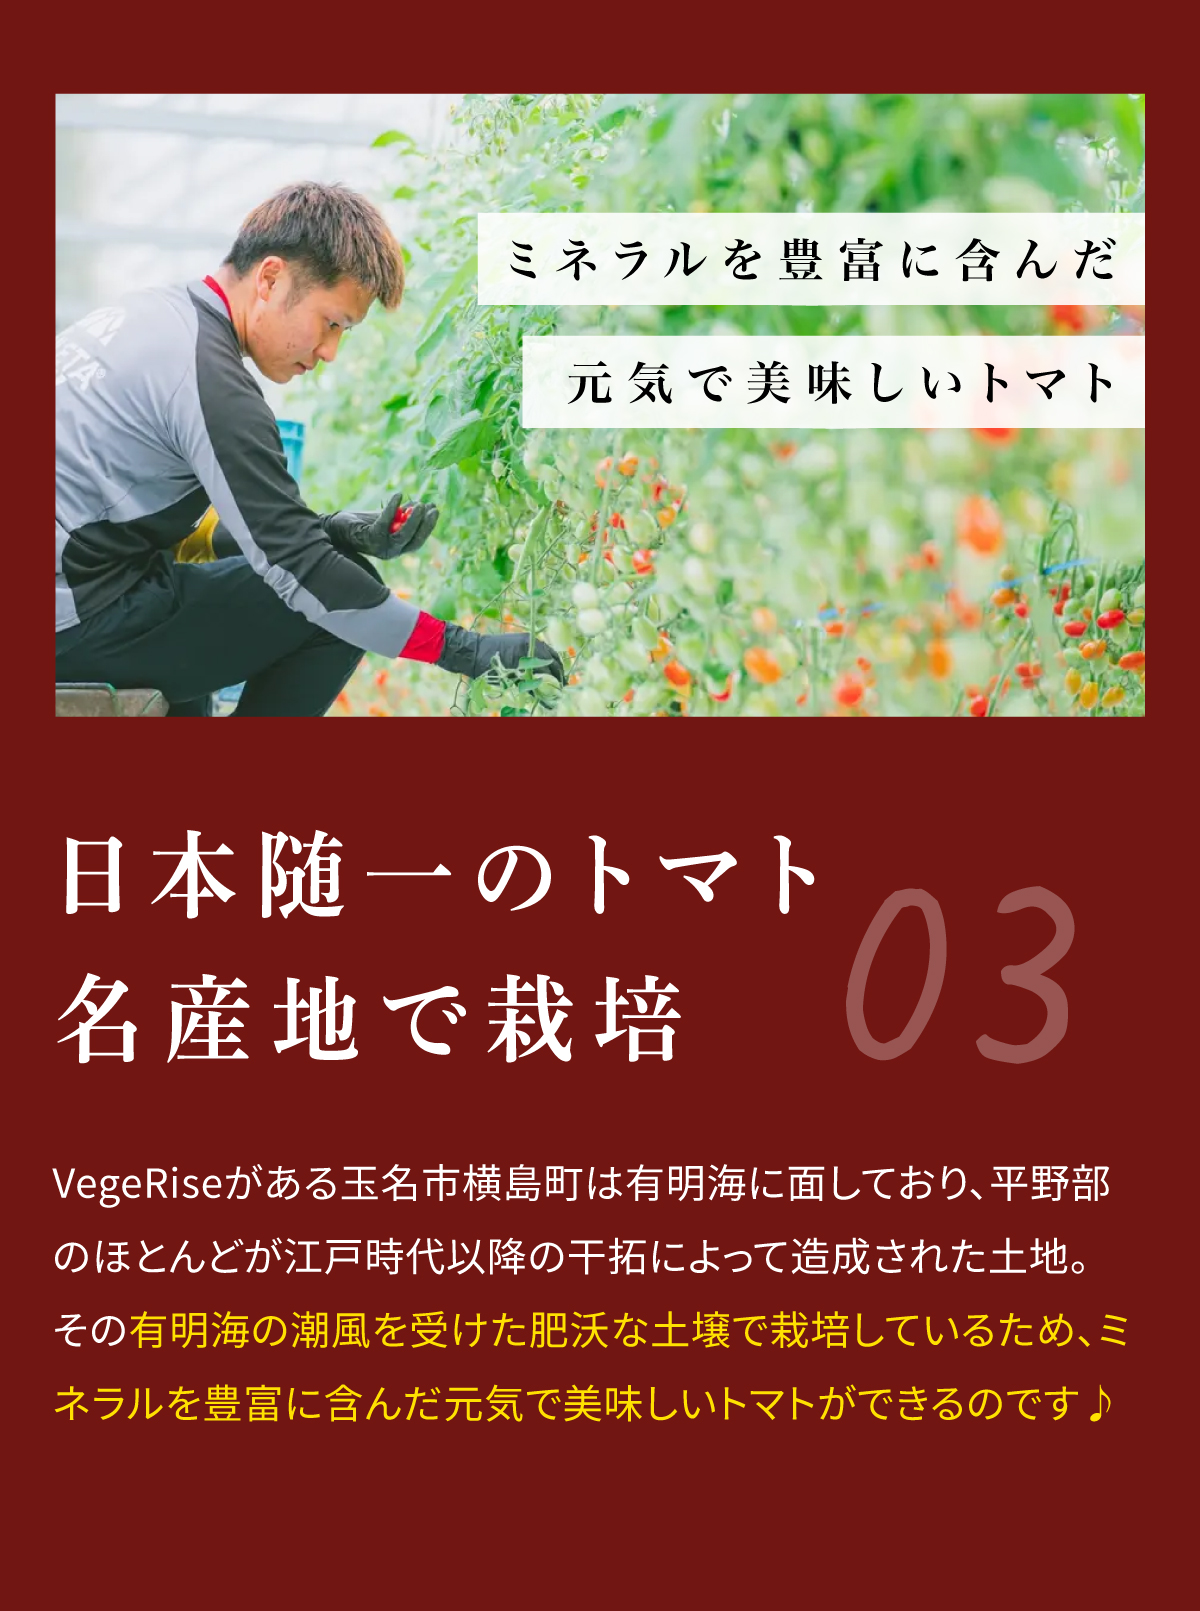 03 日本随一のトマト名産地で栽培 VegeRiseがある玉名市横島町は有明海に面しており、平野部のほとんどが江戸時代以降の干拓によって造成された土地。その有明海の潮風を受けた妖艶な土壌で栽培しているため、ミネラルを豊富に含んだ元気で美味しいトマトができるのです♪